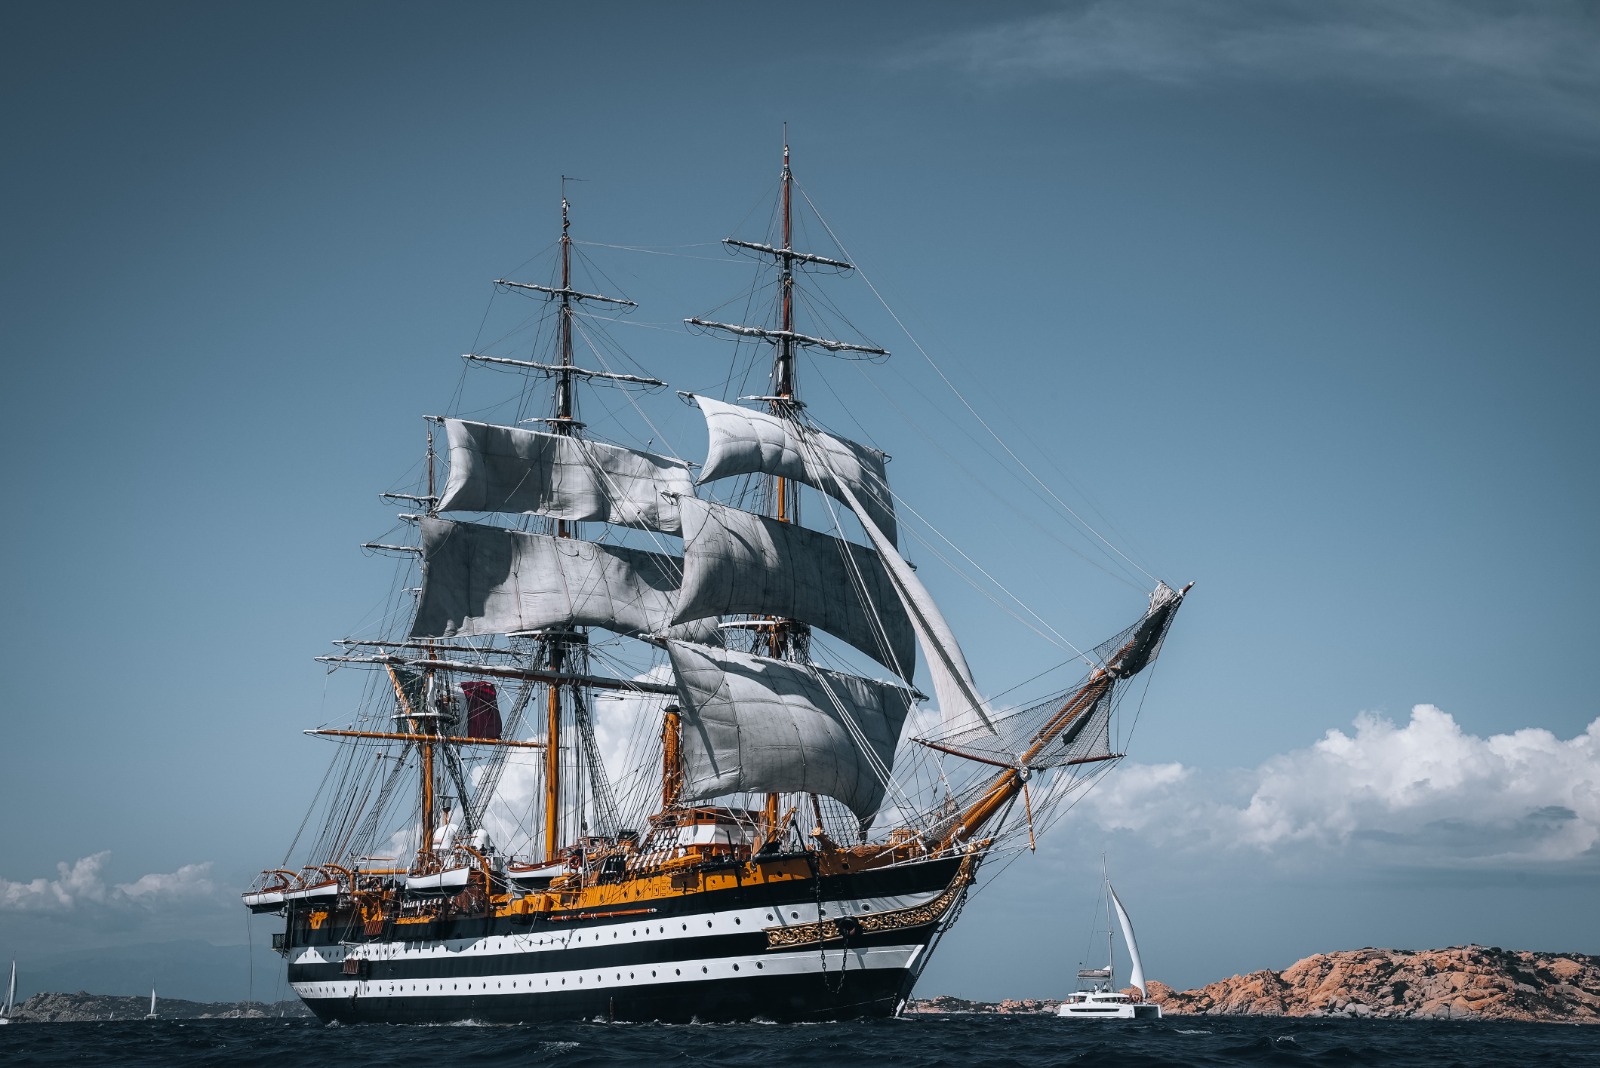 Amerigo Vespucci, o “navio mais bonito do mundo”, aporta em Fortaleza no dia 4 de outubro